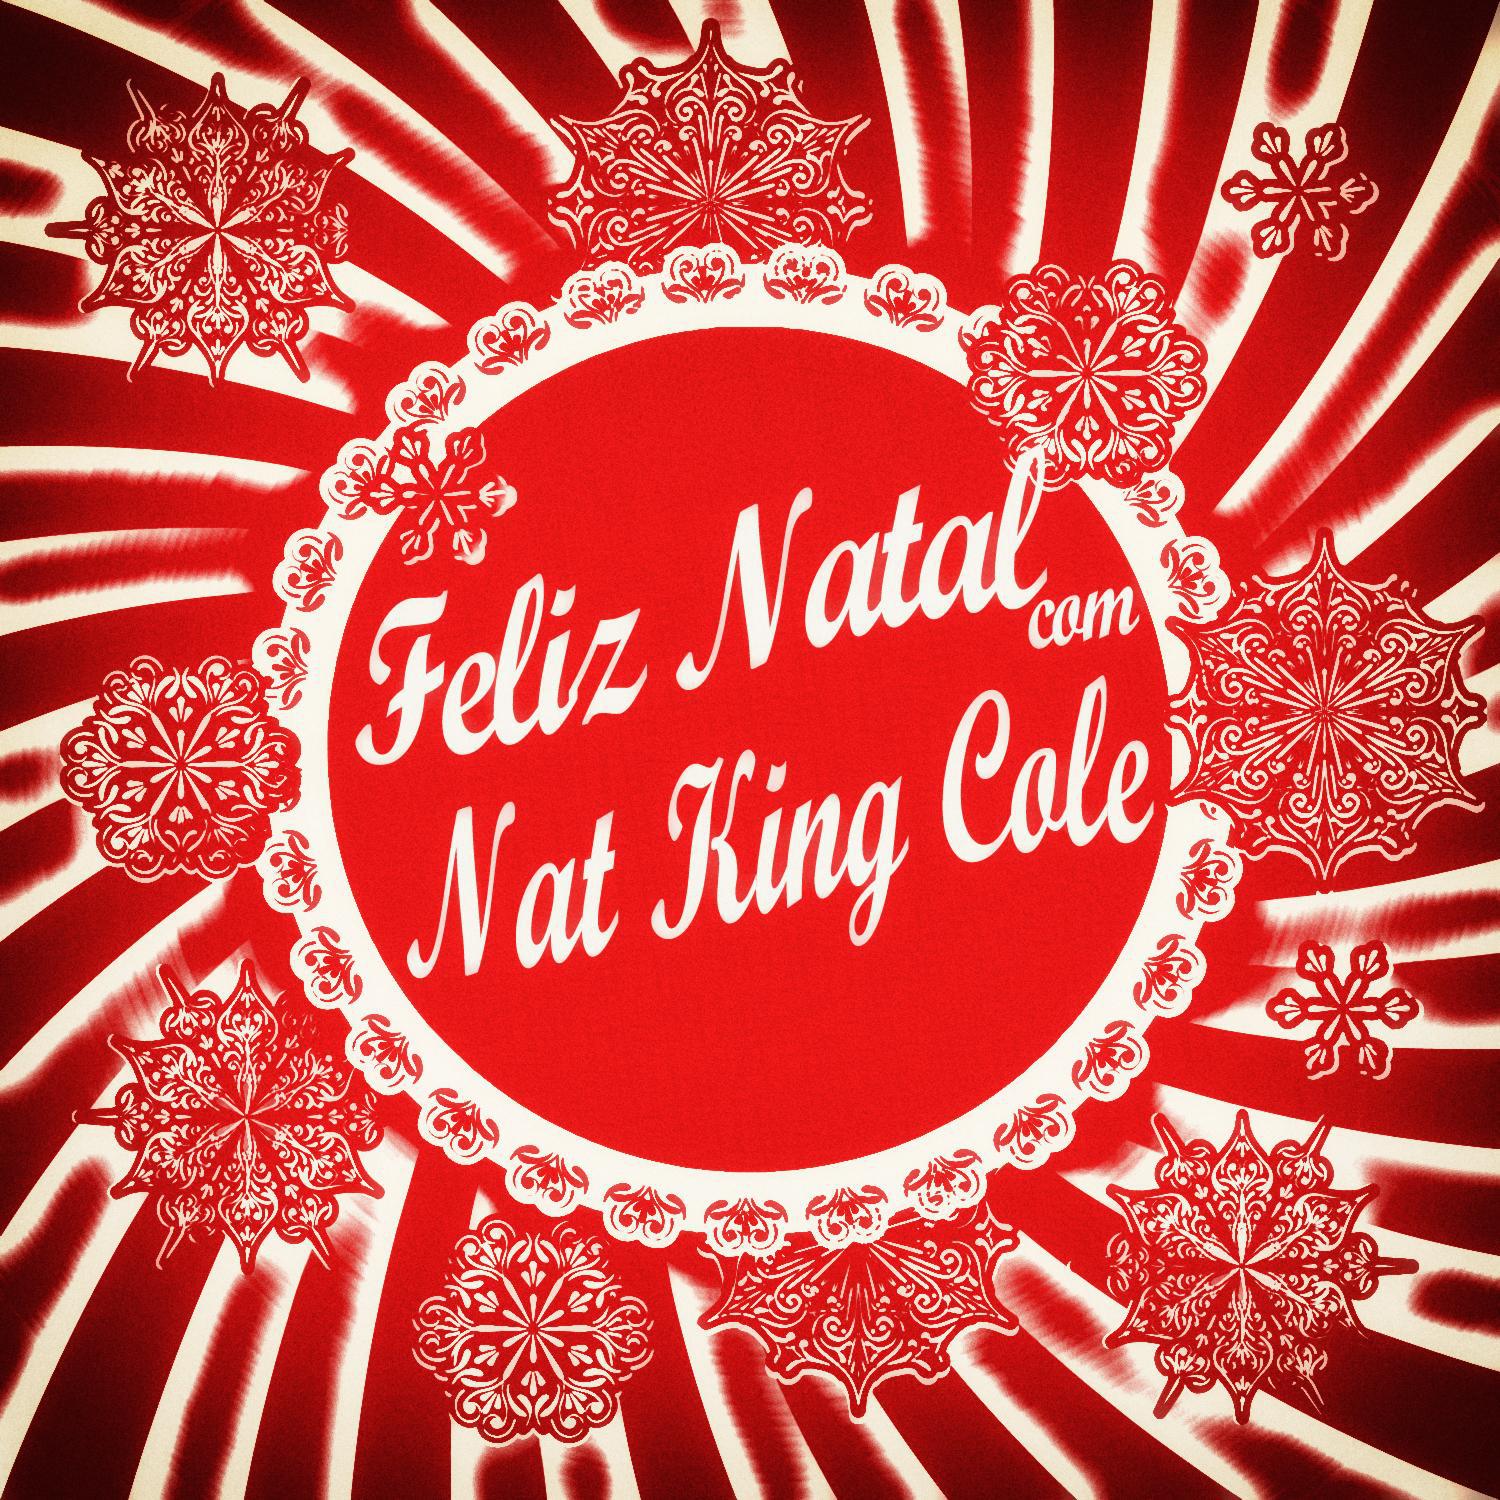 Feliz Natal Com Nat King Cole专辑